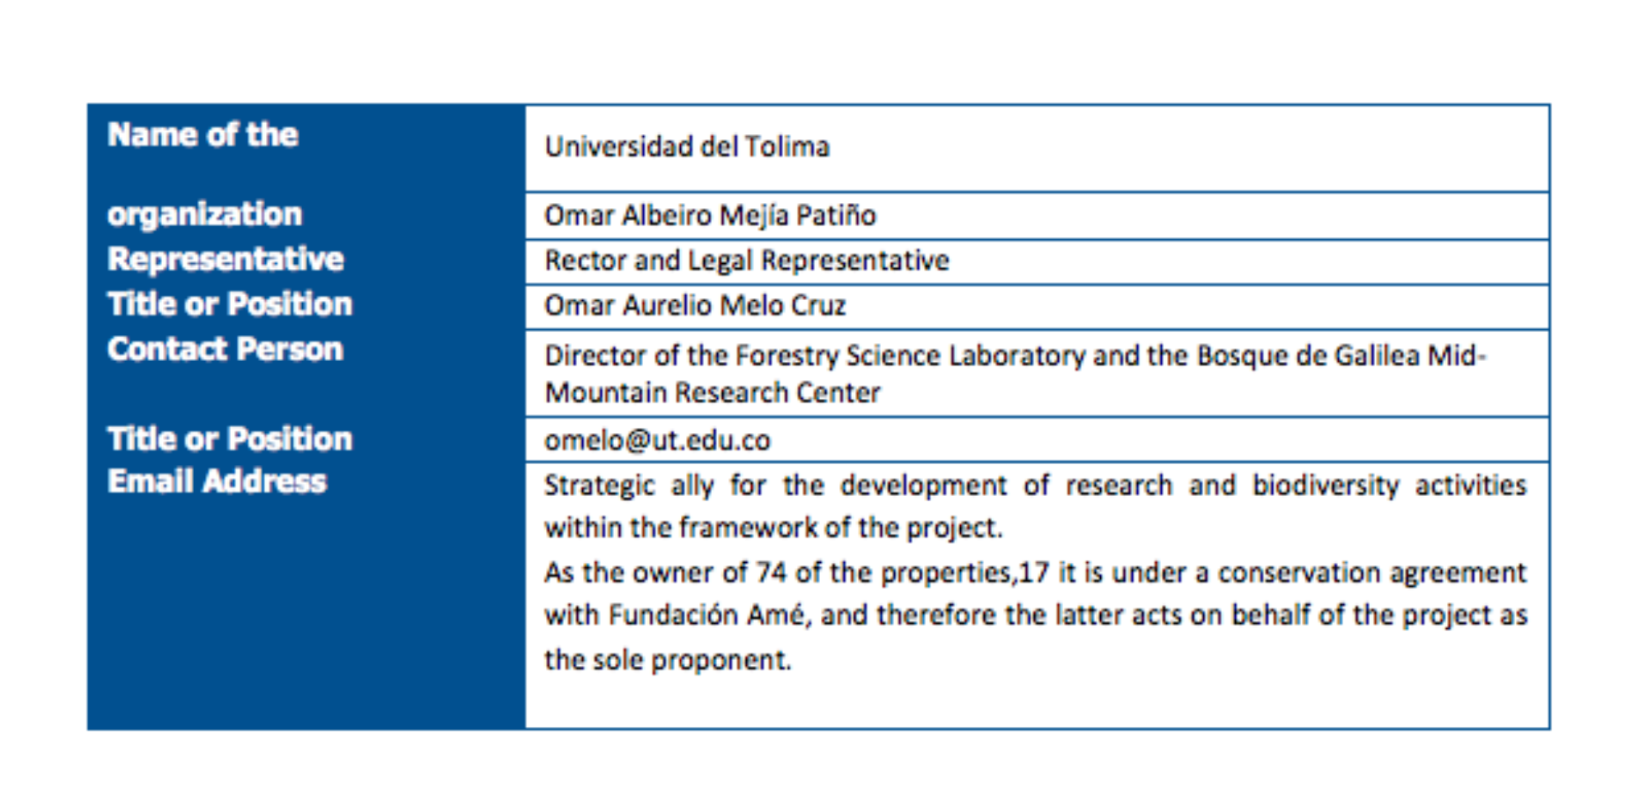 La Universidad del Tolima aparece como aliada del proyecto Redd+ Fuente: Informe de auditoría de Aenor de 2022.